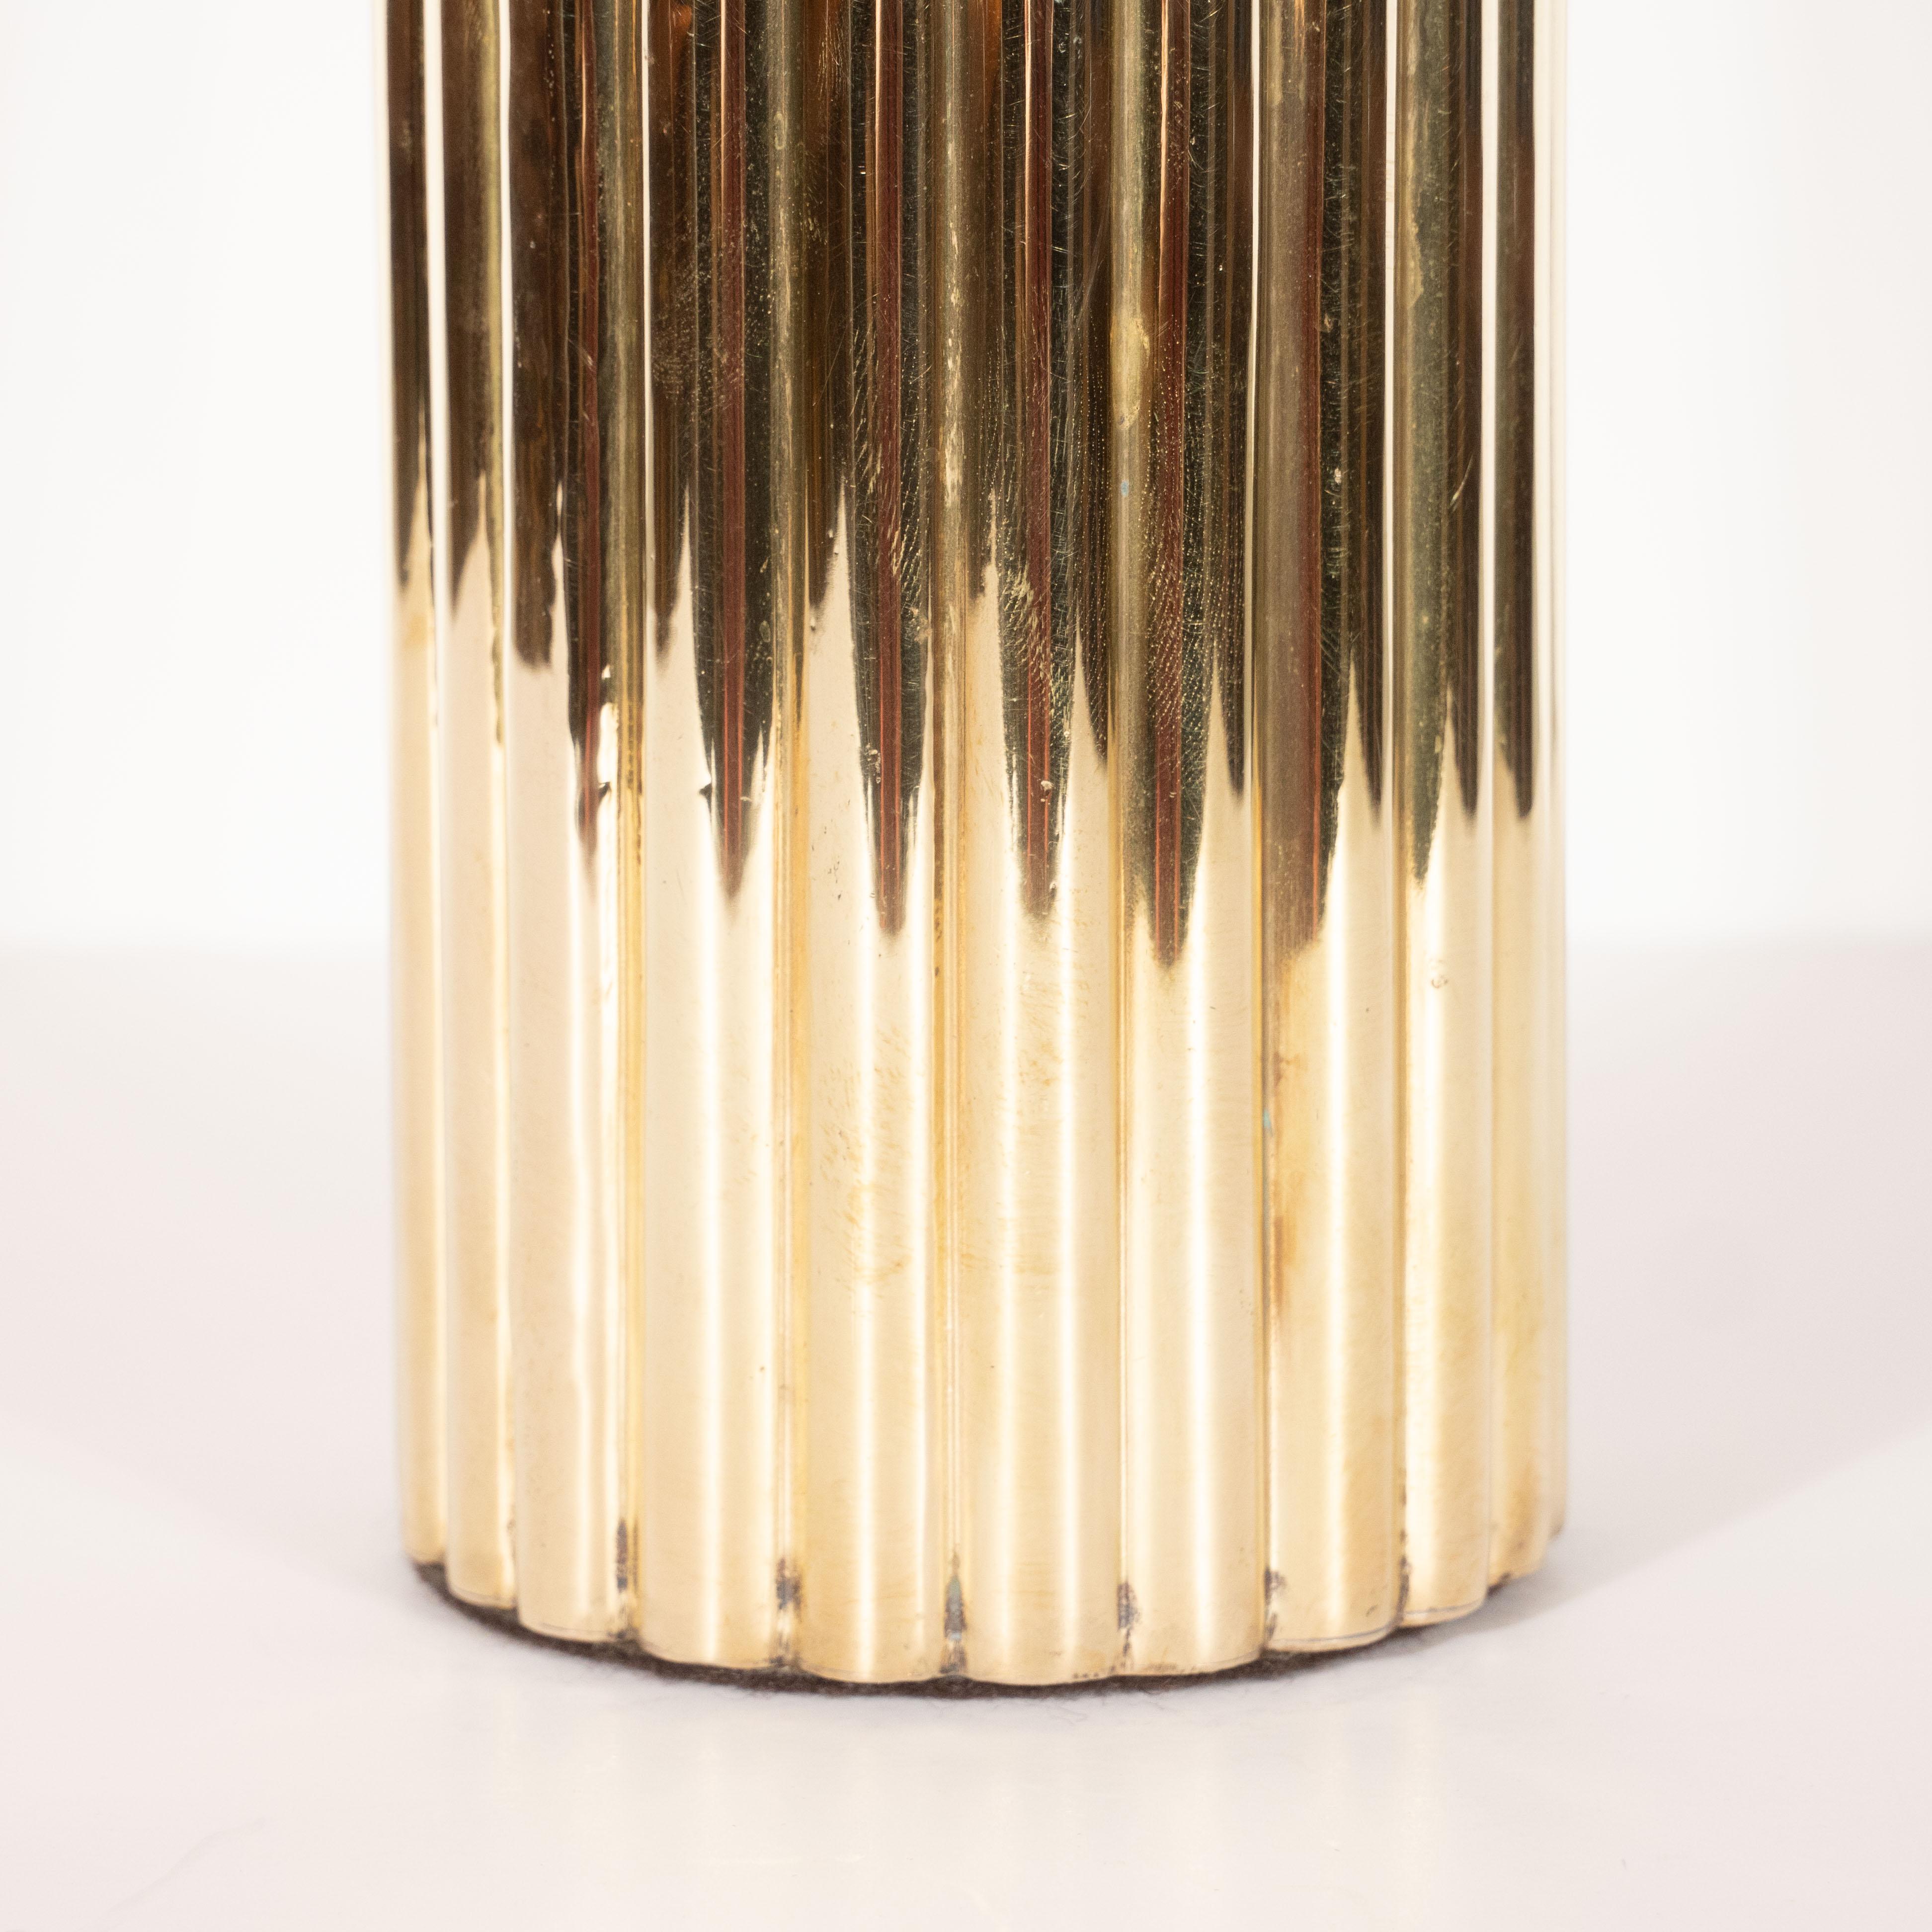 Cet élégant vase en laiton a été fabriqué en Italie, vers 1970. Il présente un corps cylindrique cannelé et un sommet festonné, le tout en laiton poli lustré. Avec sa forme austère et sa composition matérielle audacieuse, cette pièce est aussi